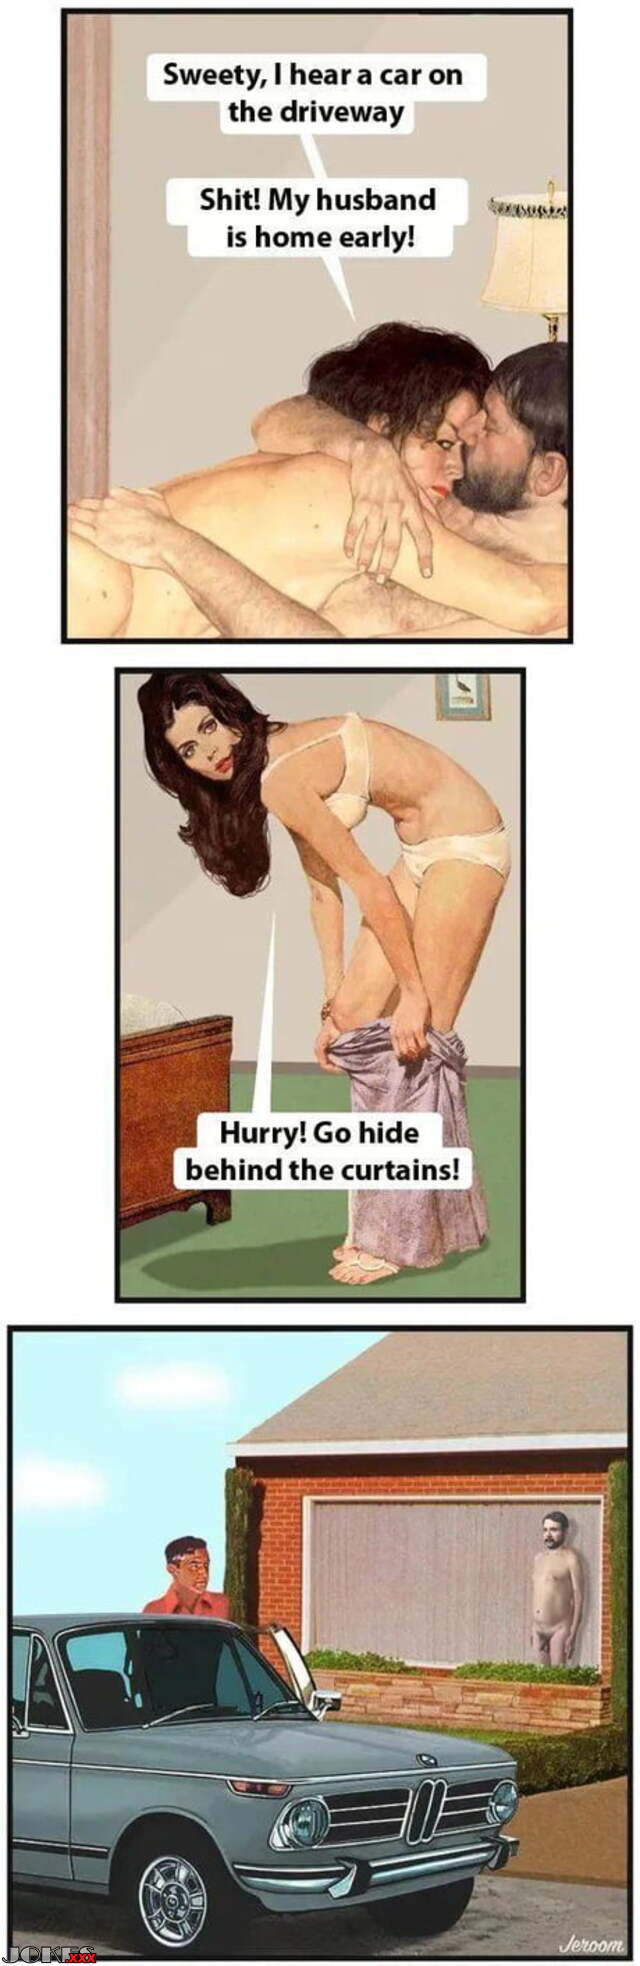 640px x 1966px - jokes porn, adult & sex